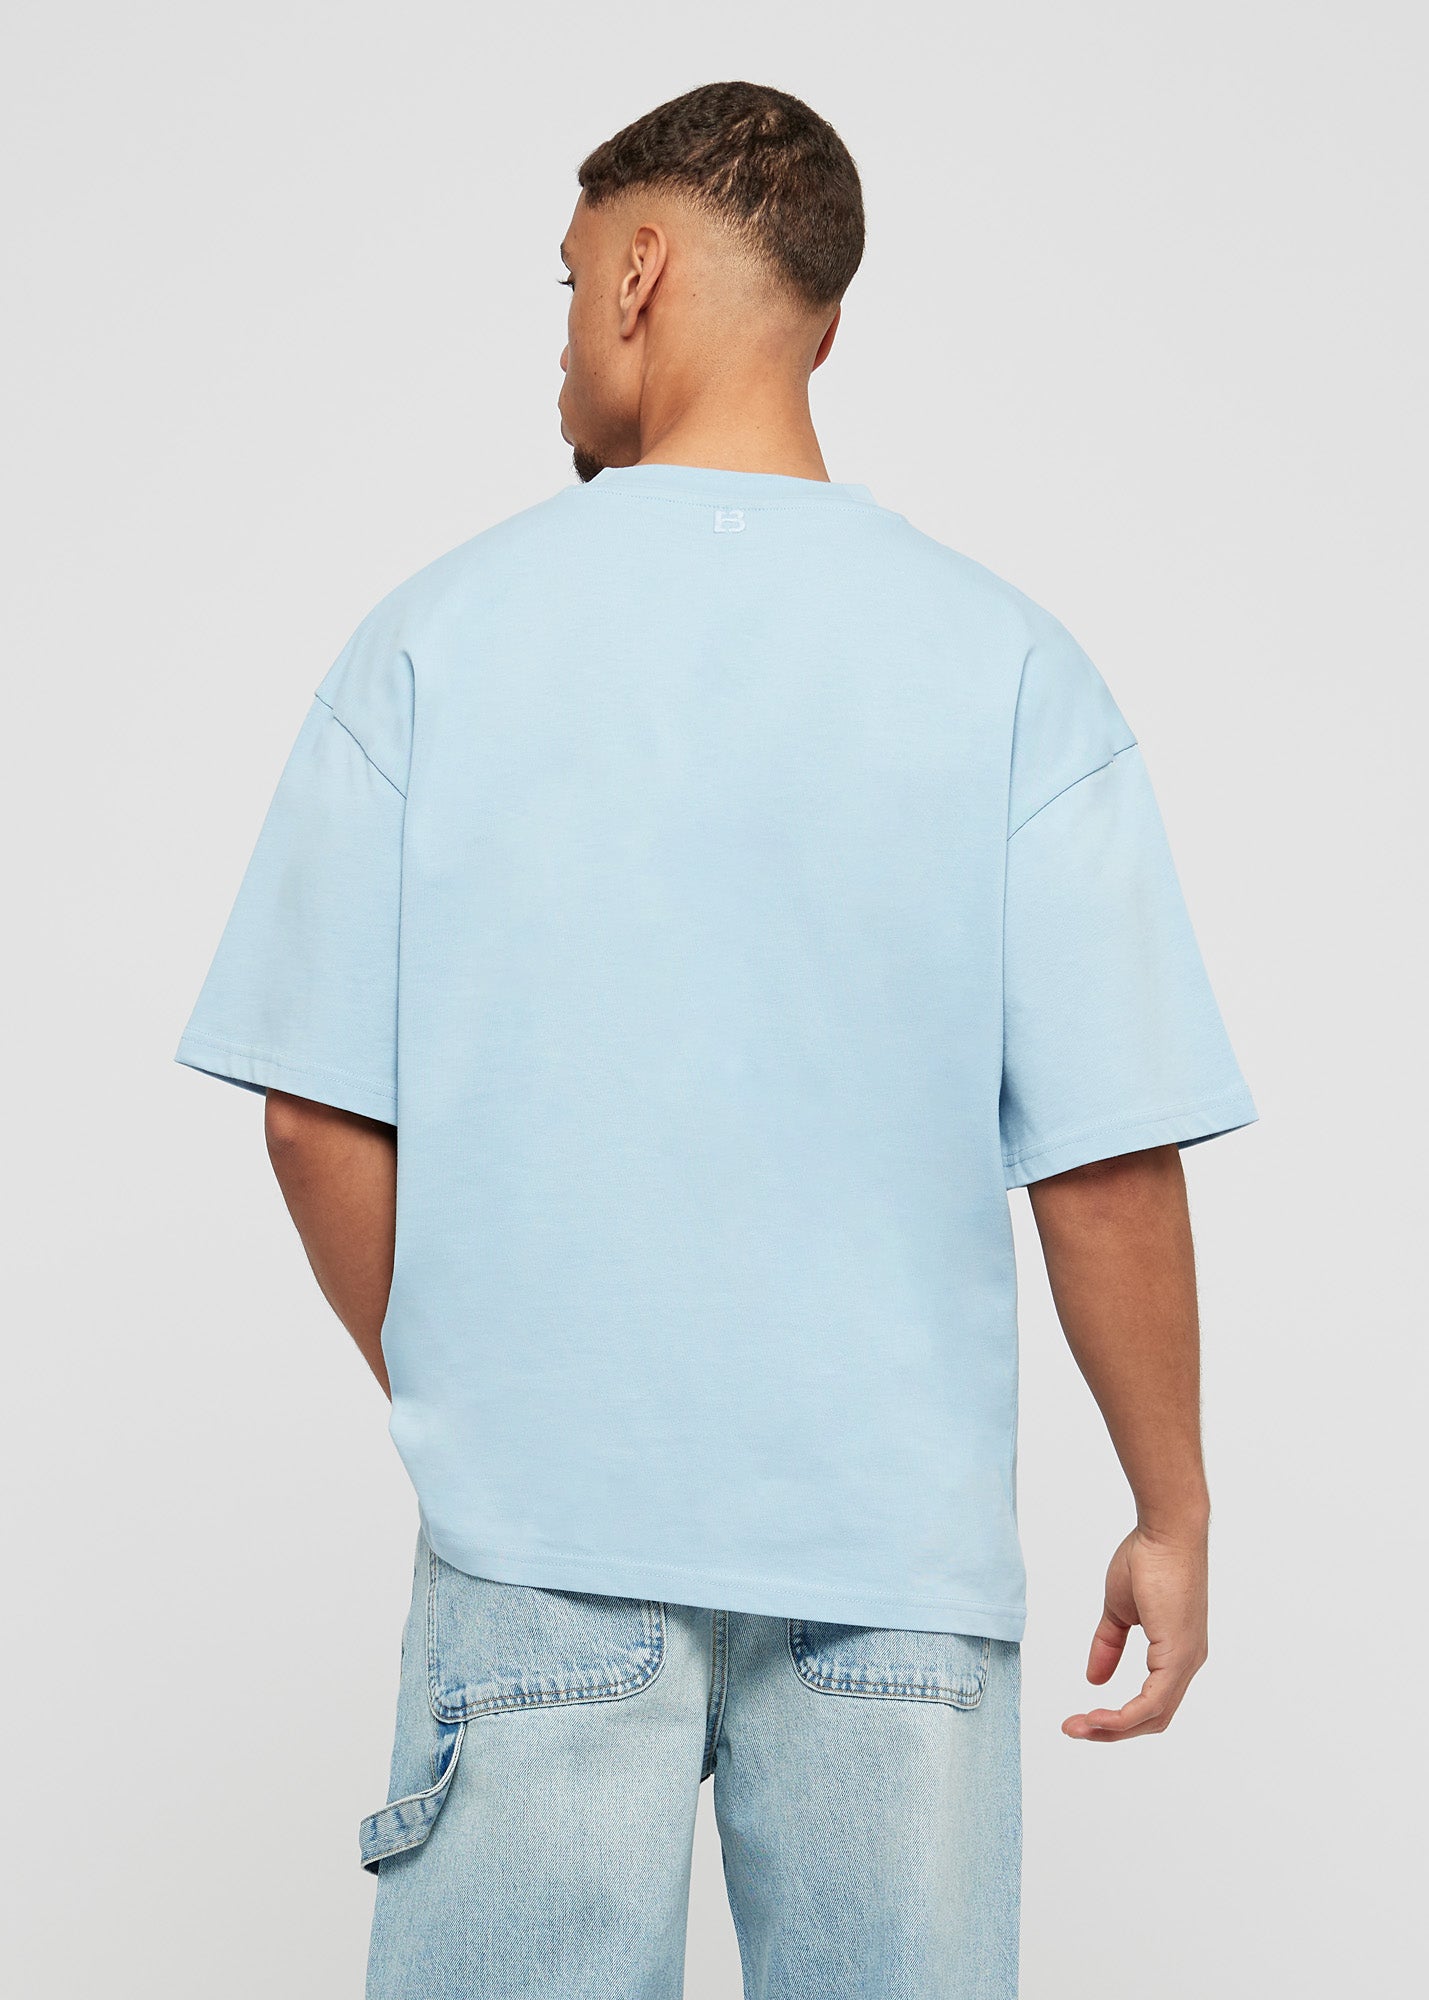 Baby blue basic oversized t-shirt